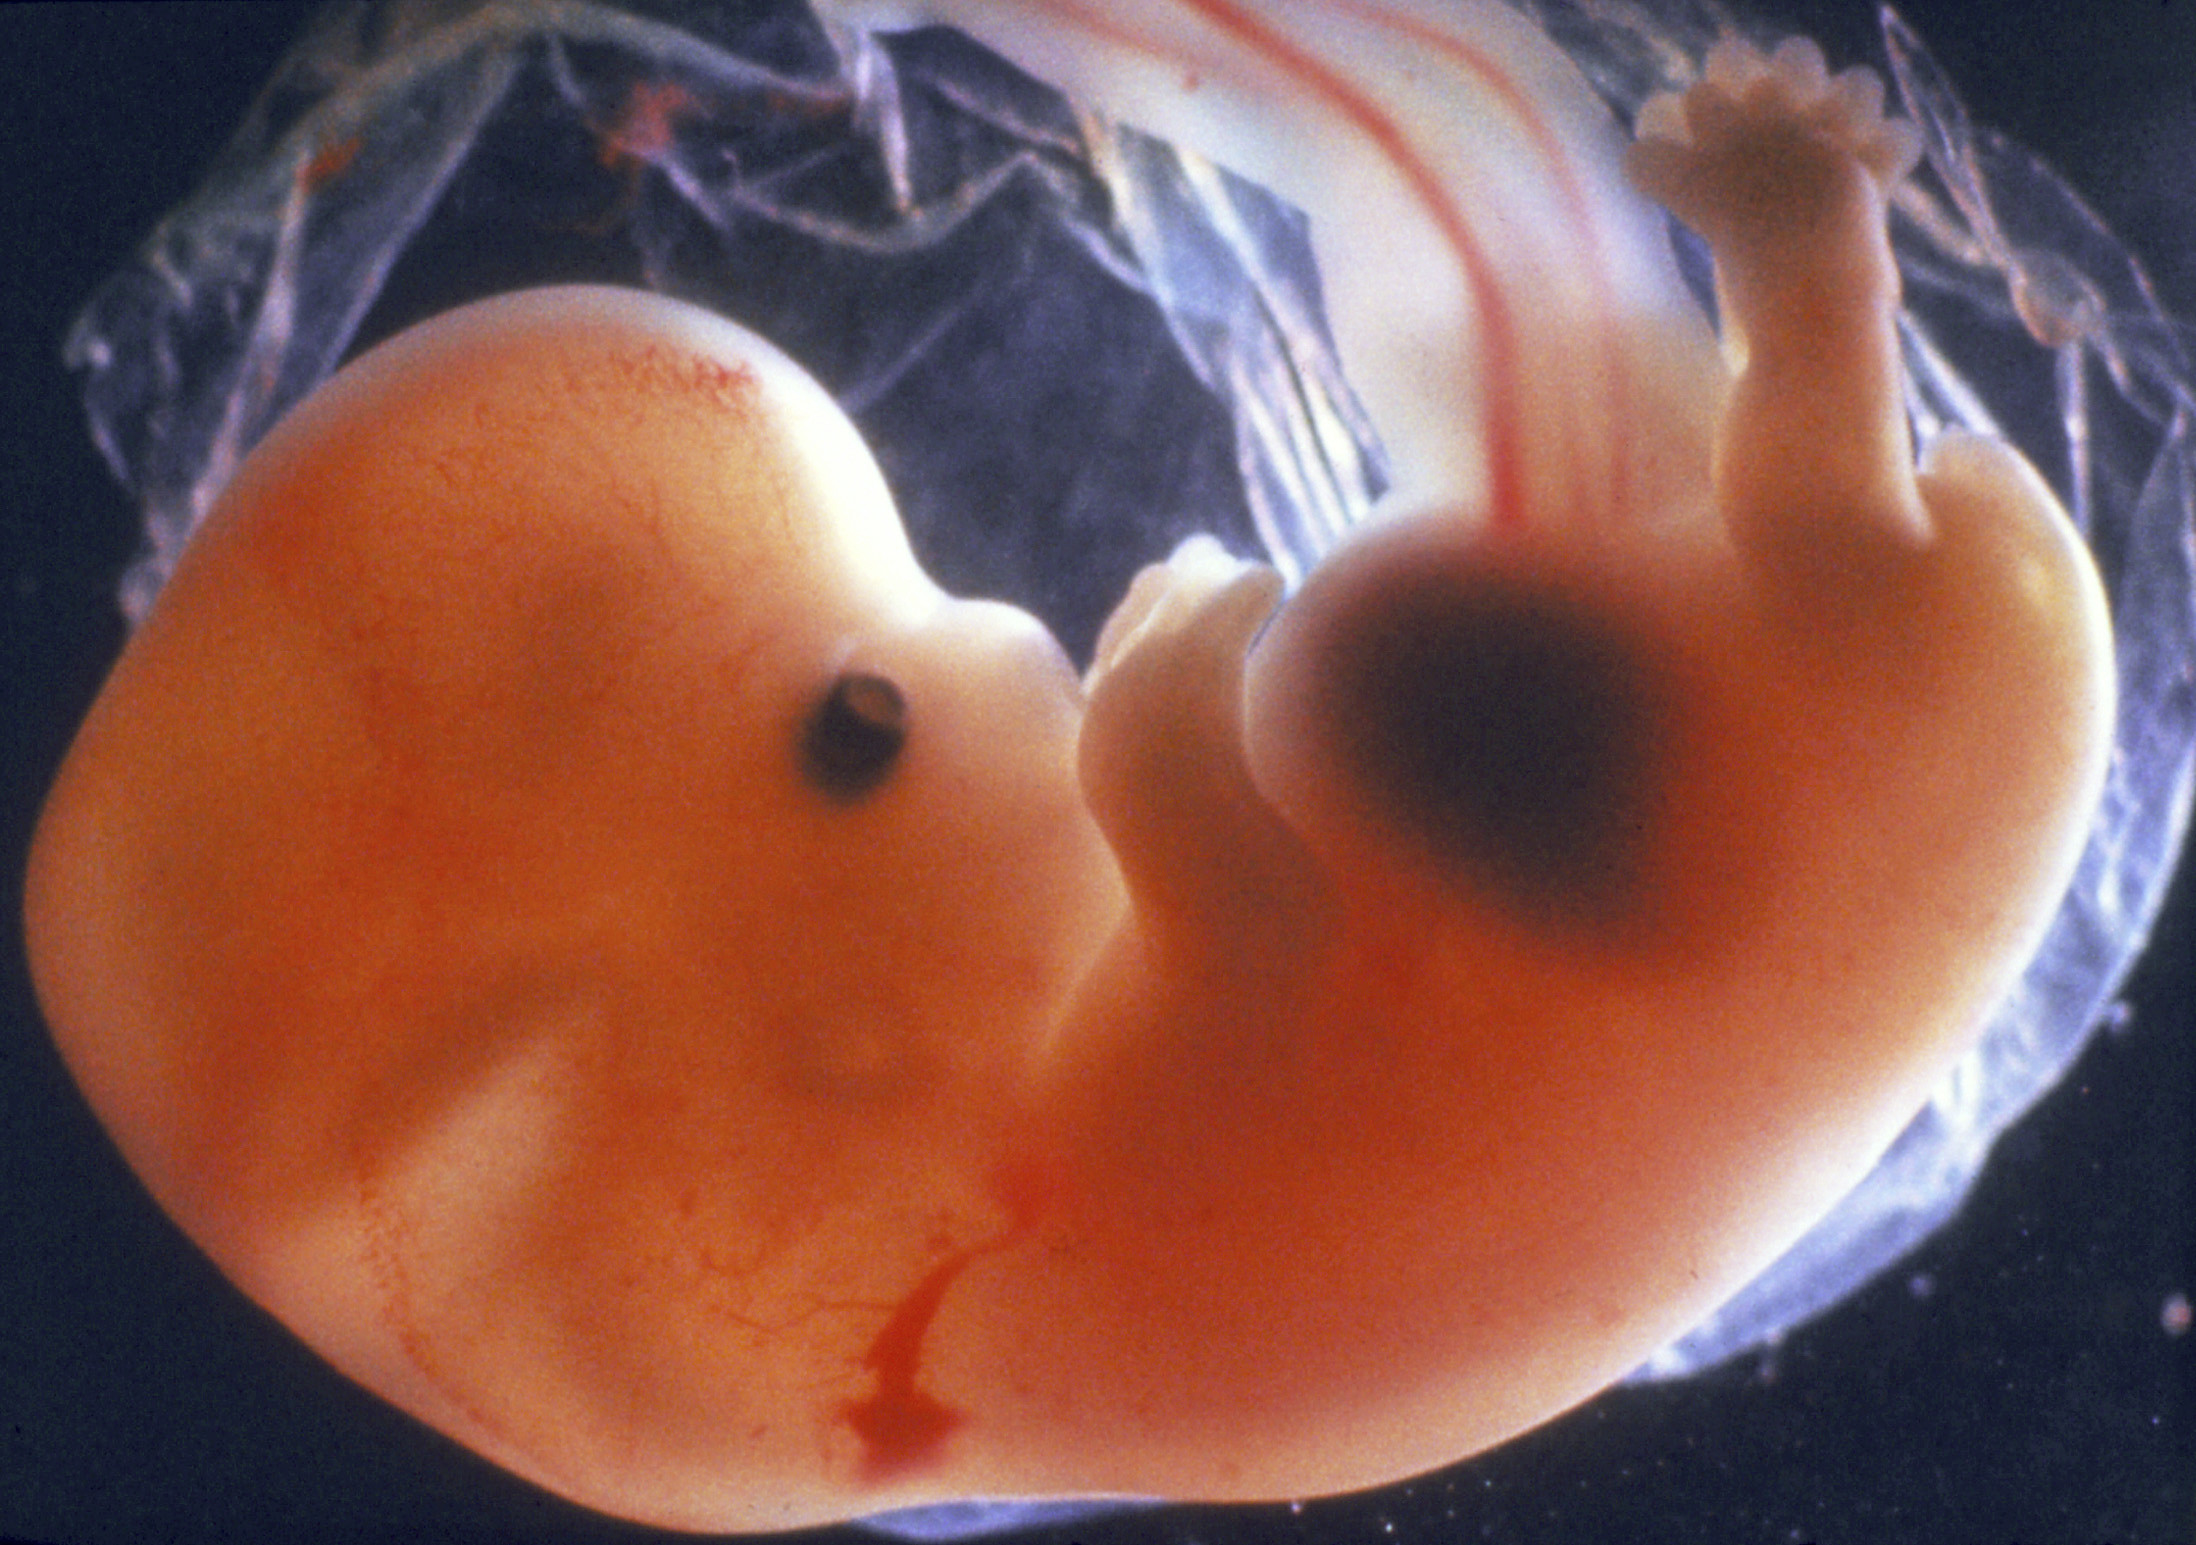 6 неделя что происходит с малышом. Эмбрион на 6 неделе беременности. Эмбрион на 7 неделе беременности. 5 6 Недель беременности фото эмбриона. Беременность 6 недель фото эмбриона.